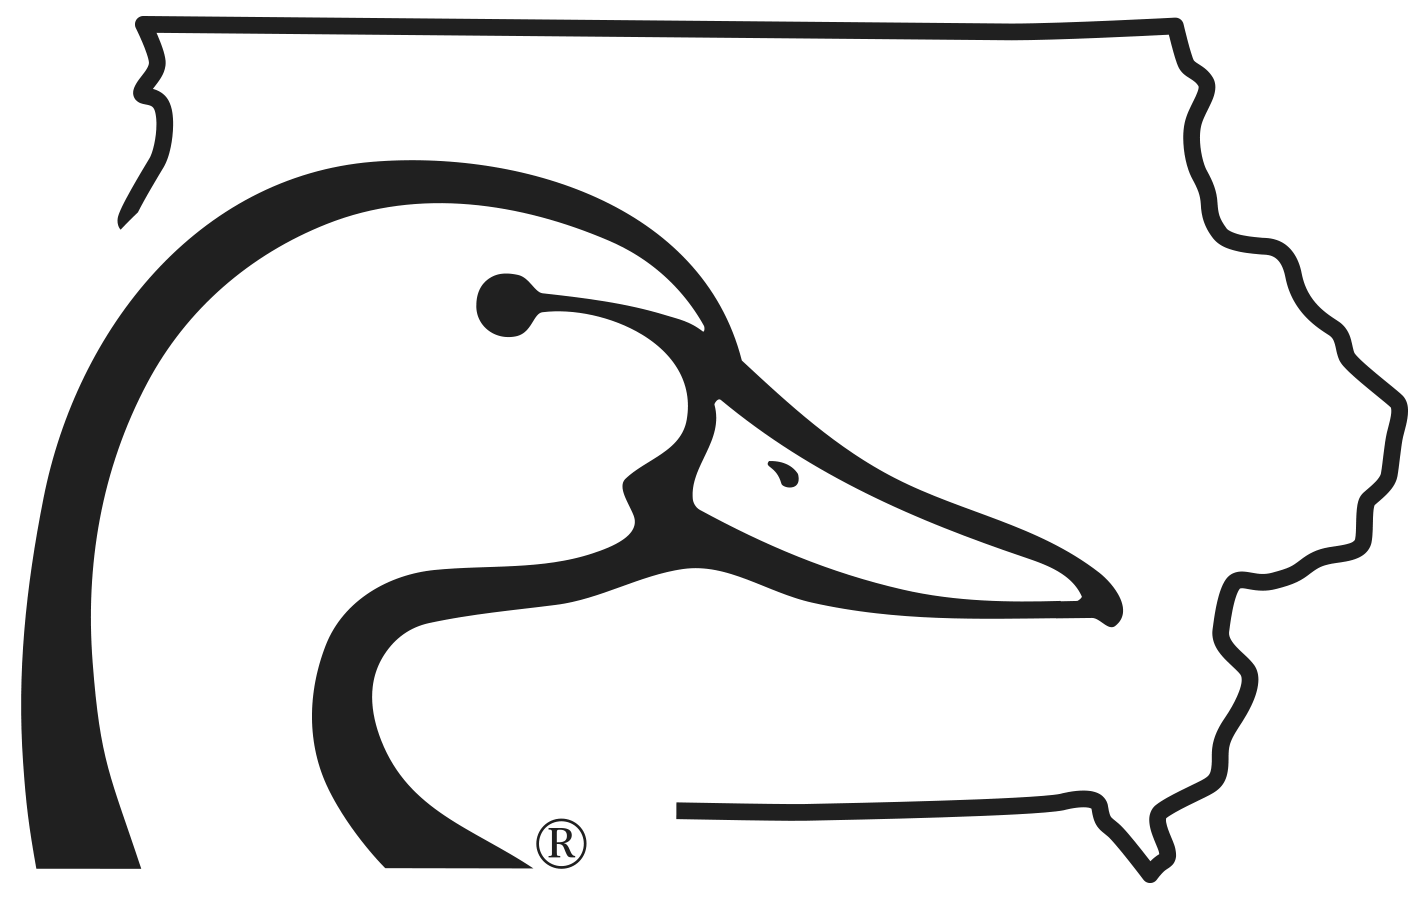 Iowa  Ducks Unlimited